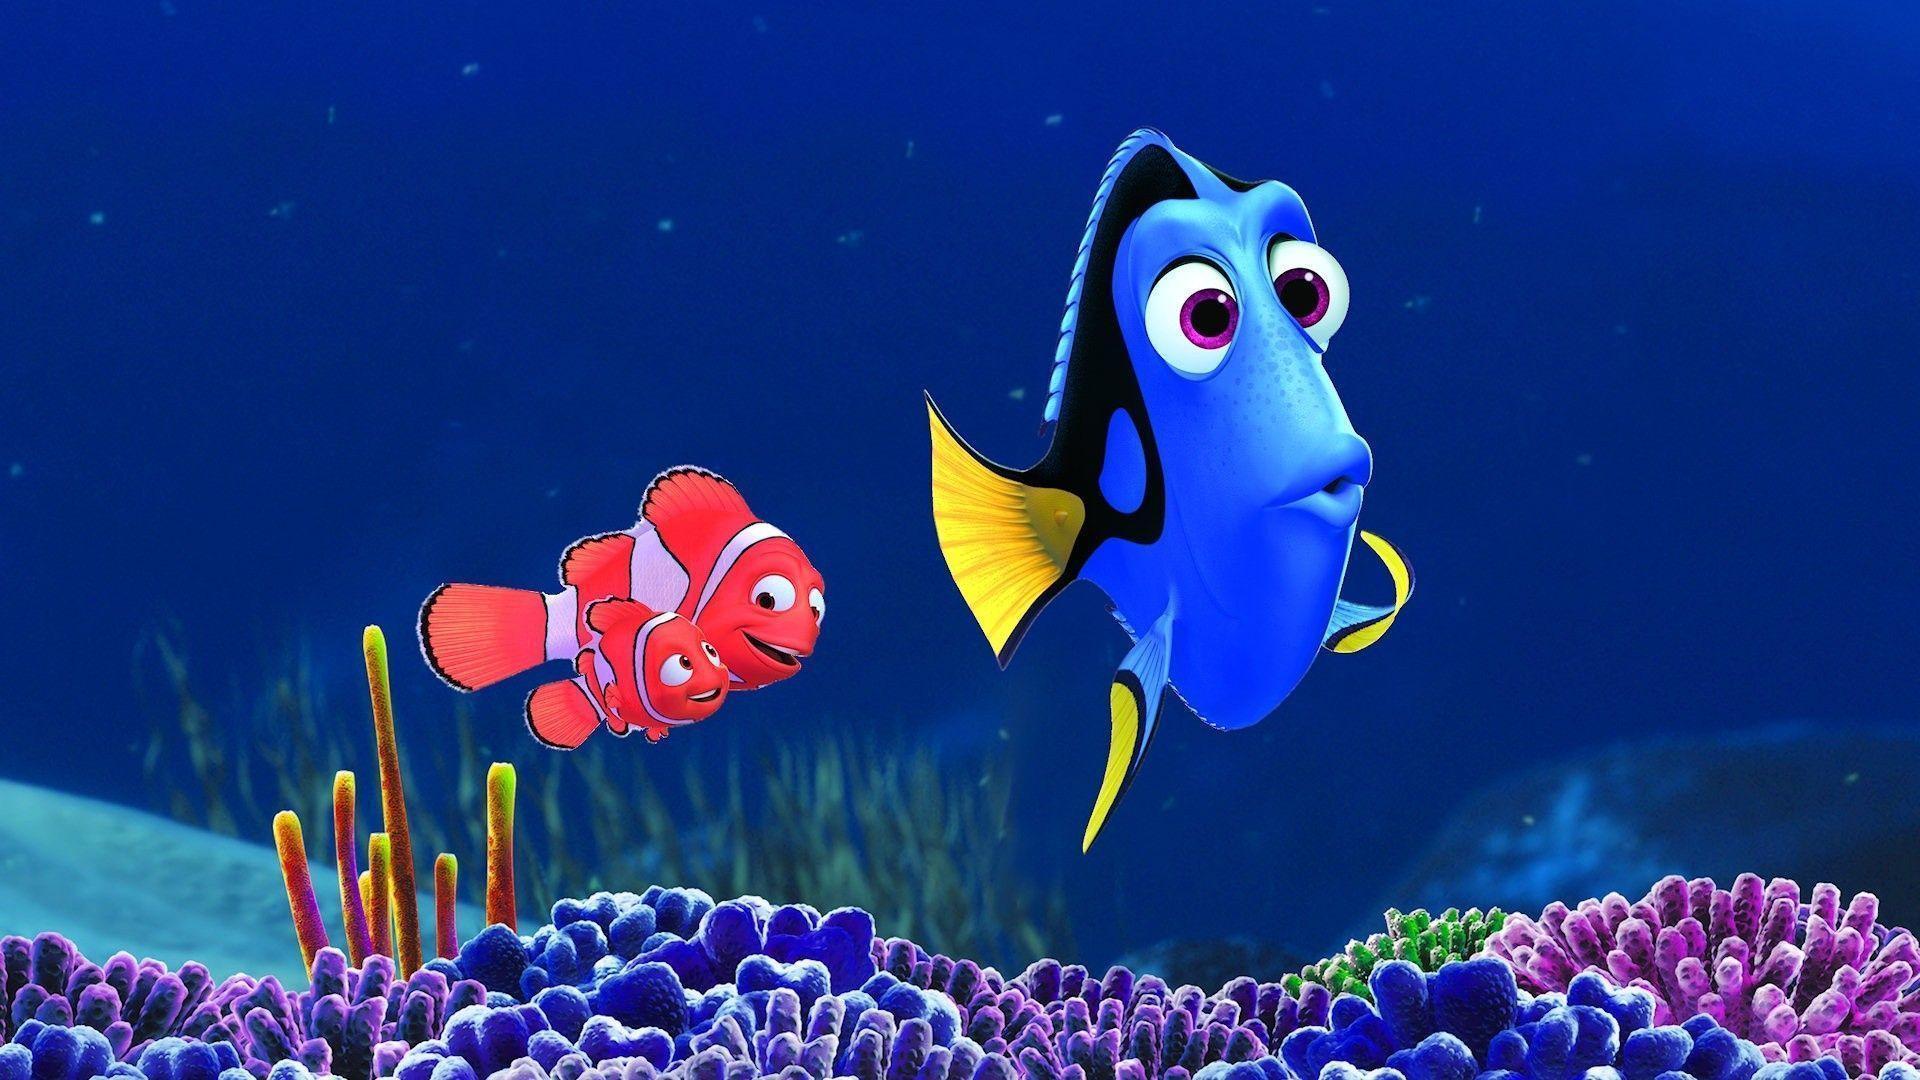 Finding Nemo Dory Disney Wallpaper For Desktop Wallpaper